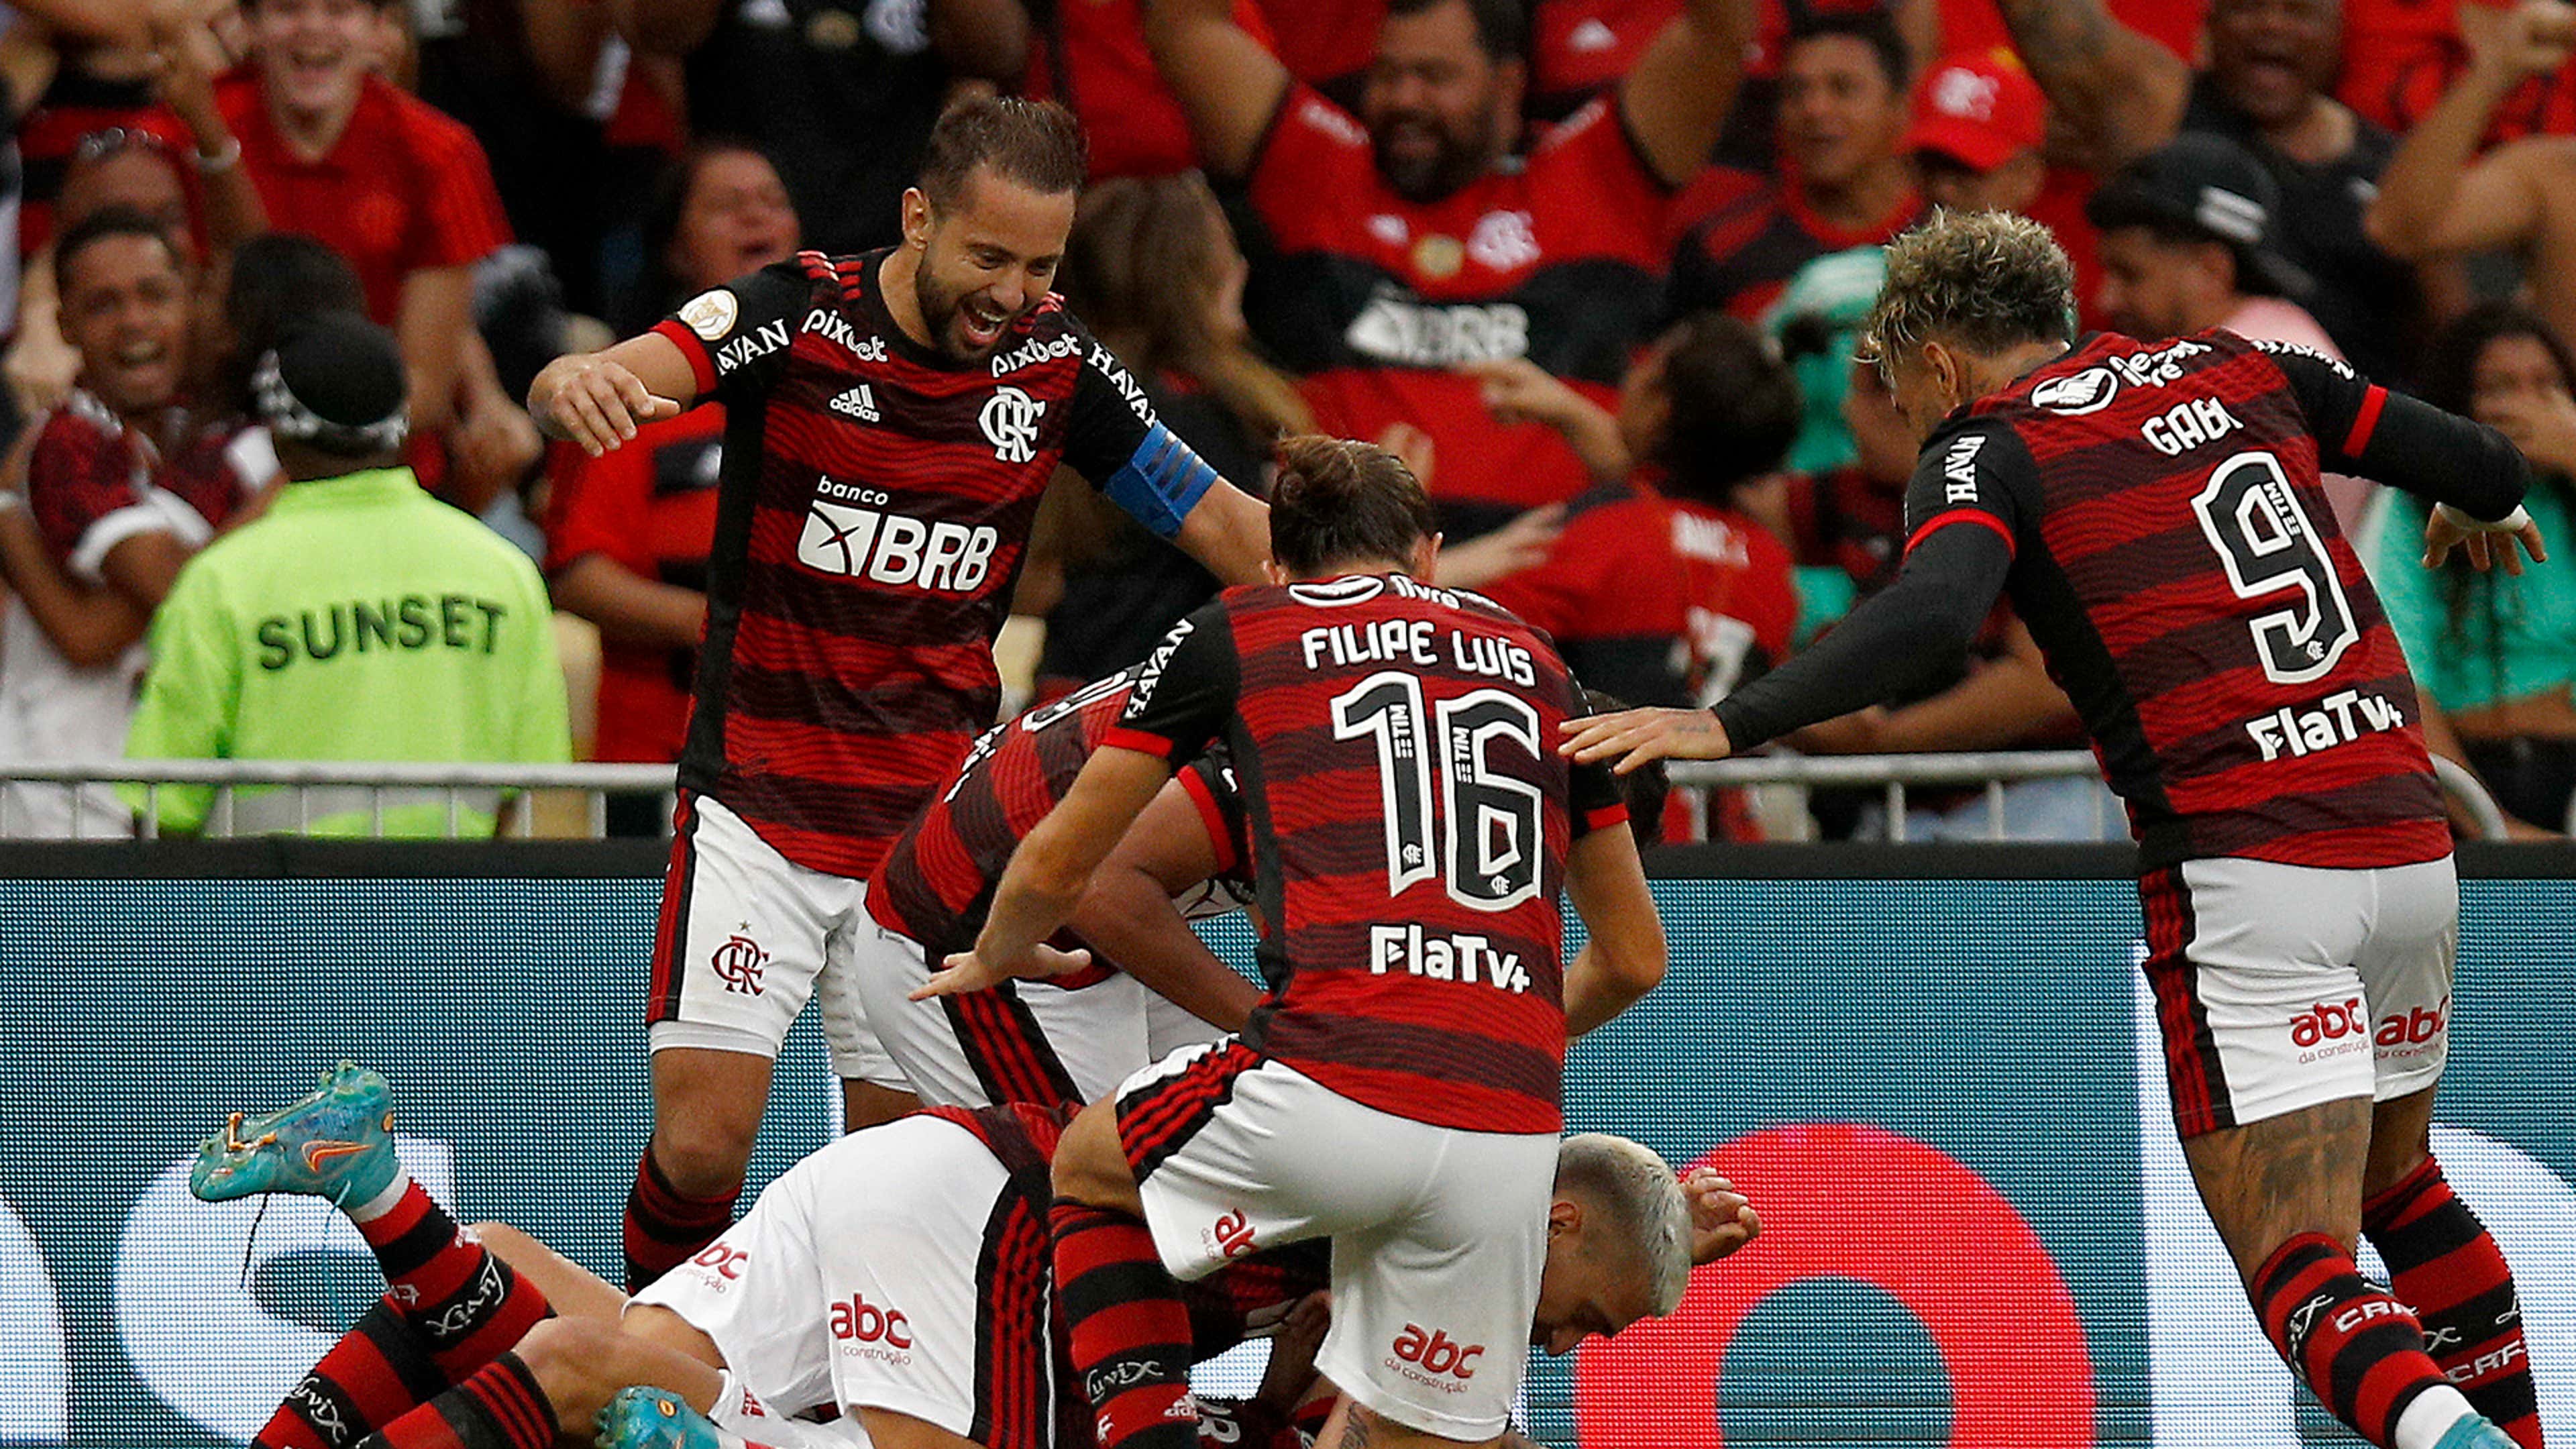 Flamengo, Últimas notícias, resultados e próximos jogos